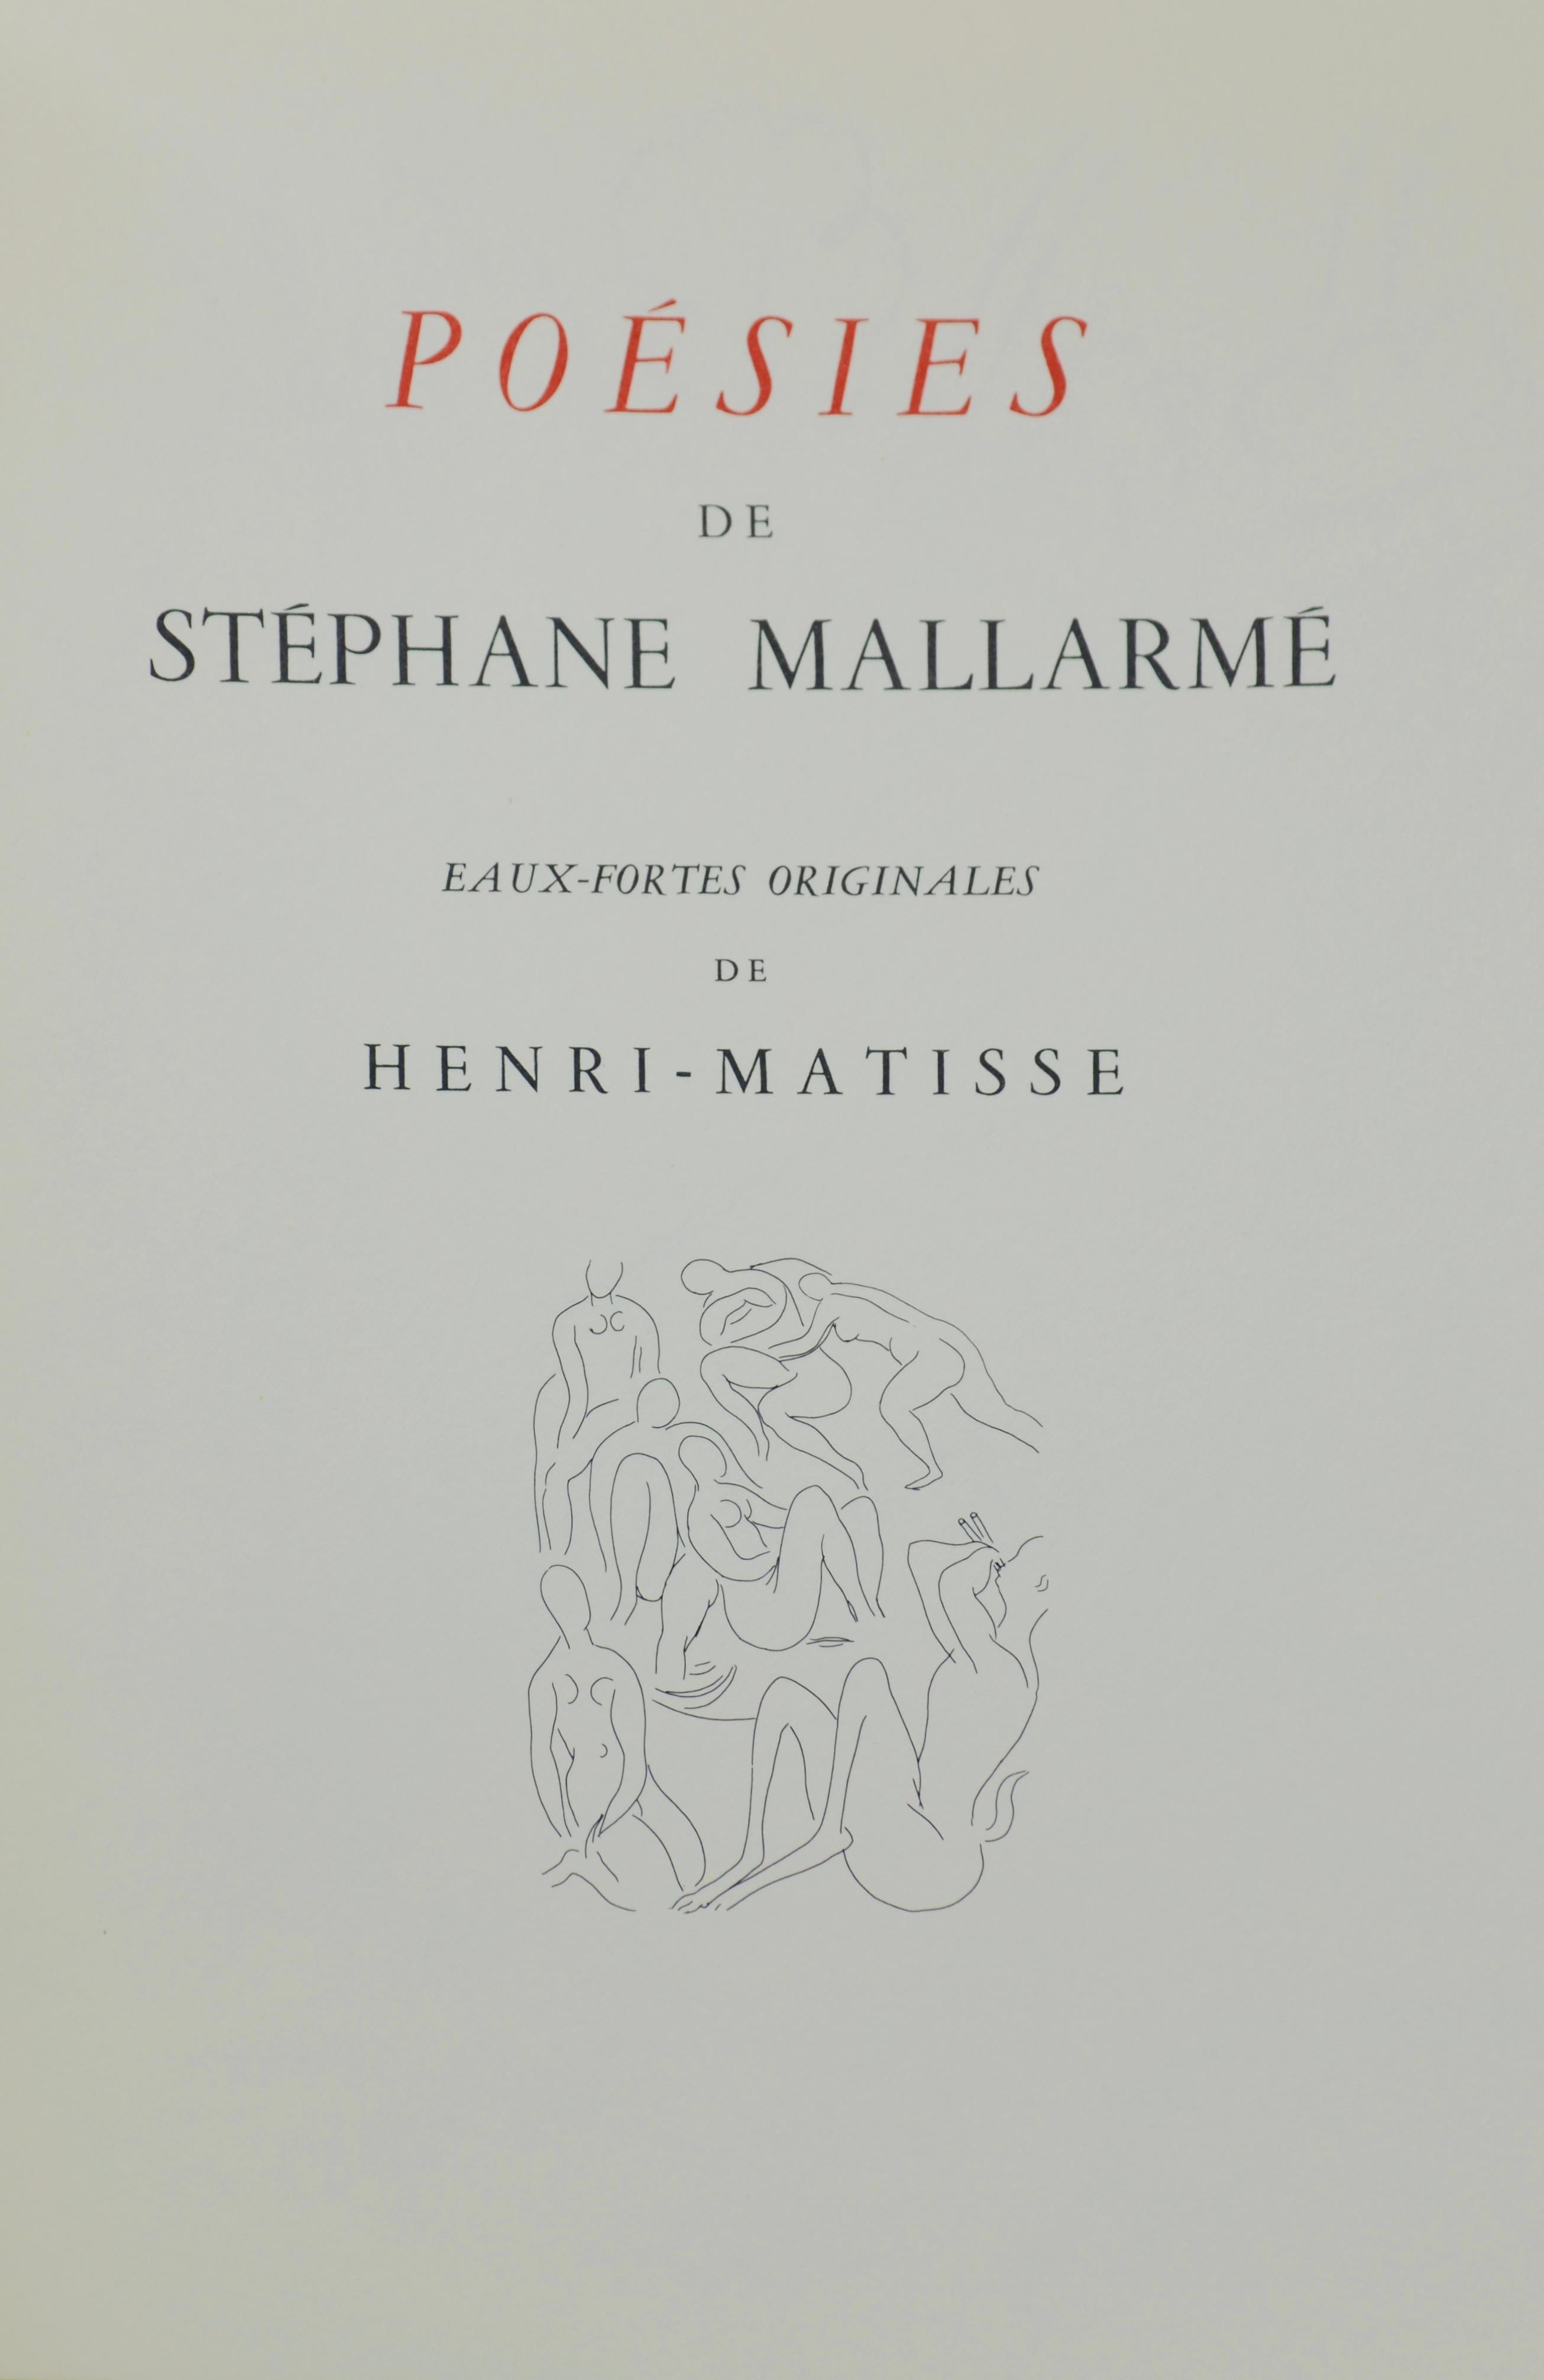 Matisse, Feuillets d'Album (Album Sheets), Poésies (after) For Sale 2